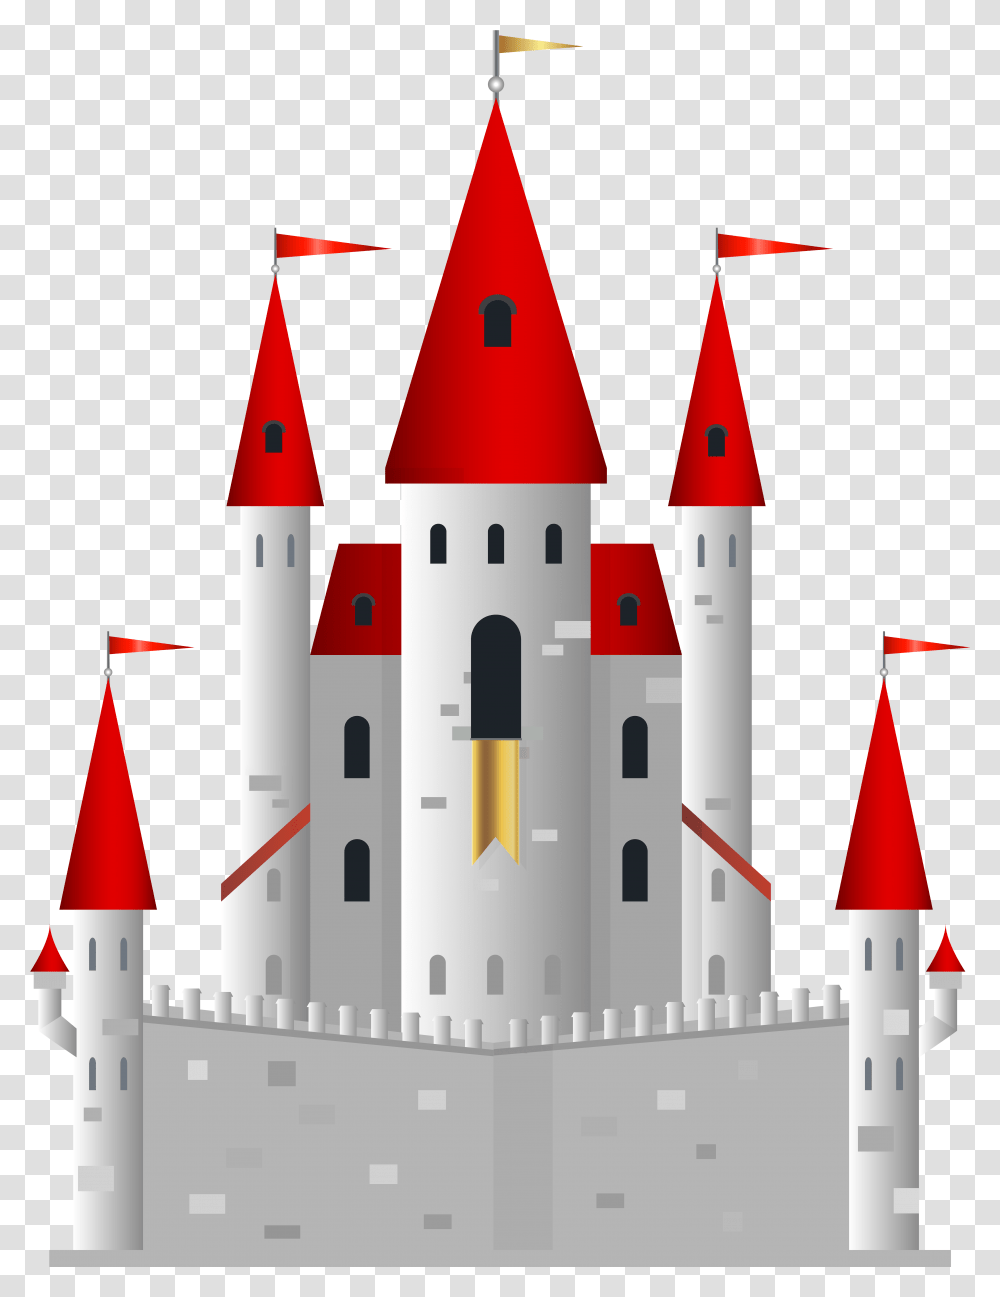 Fairytale Castle Clip Art Image Download, Architecture, Building, Spire, Tower Transparent Png